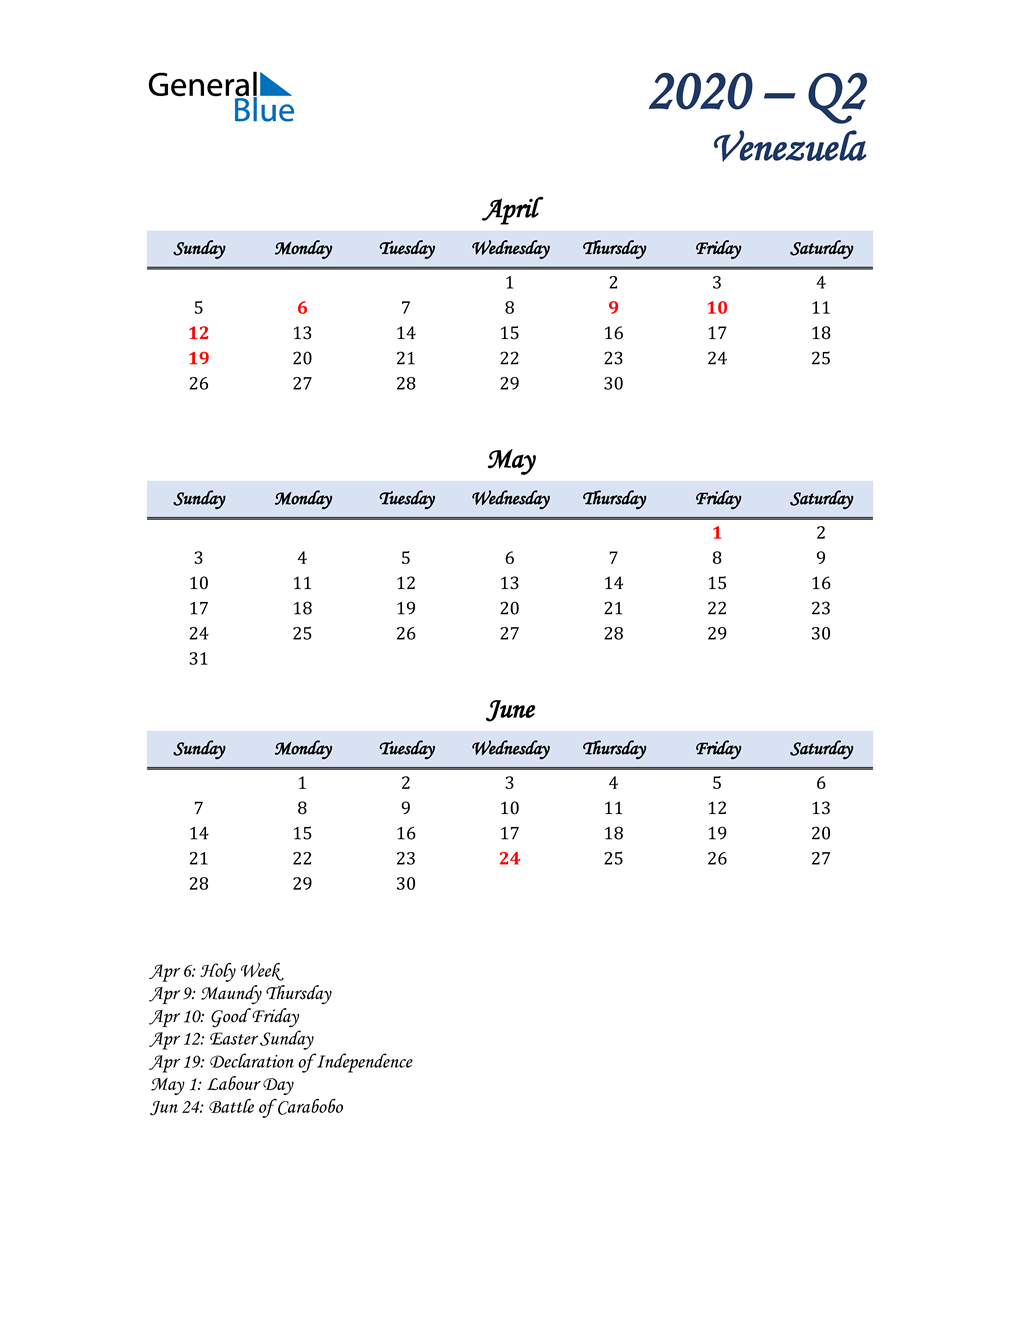  April, May, and June Calendar for Venezuela